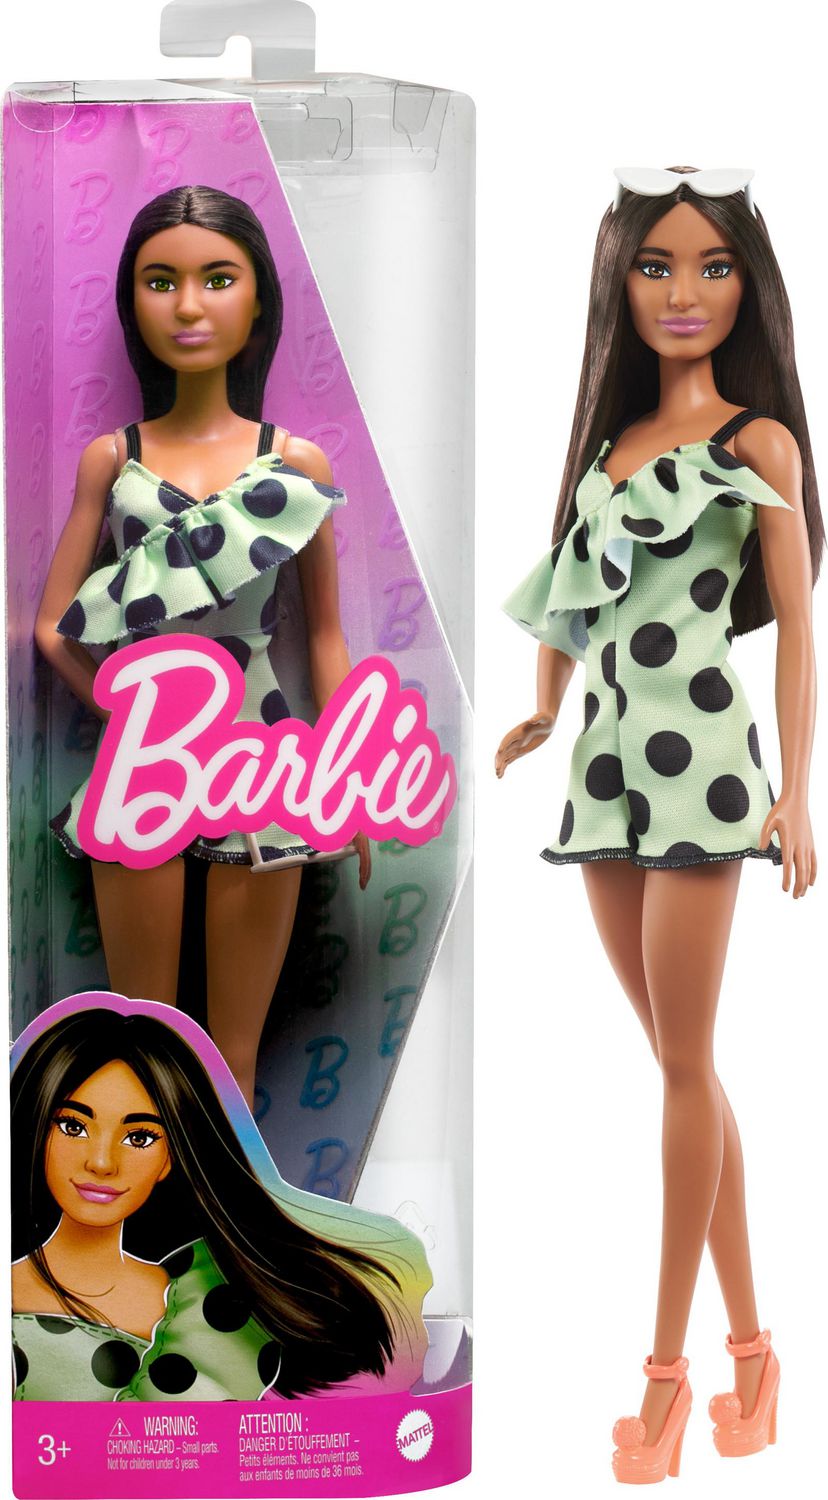 BARBIE Mobilier Barbie Brune et Chambre